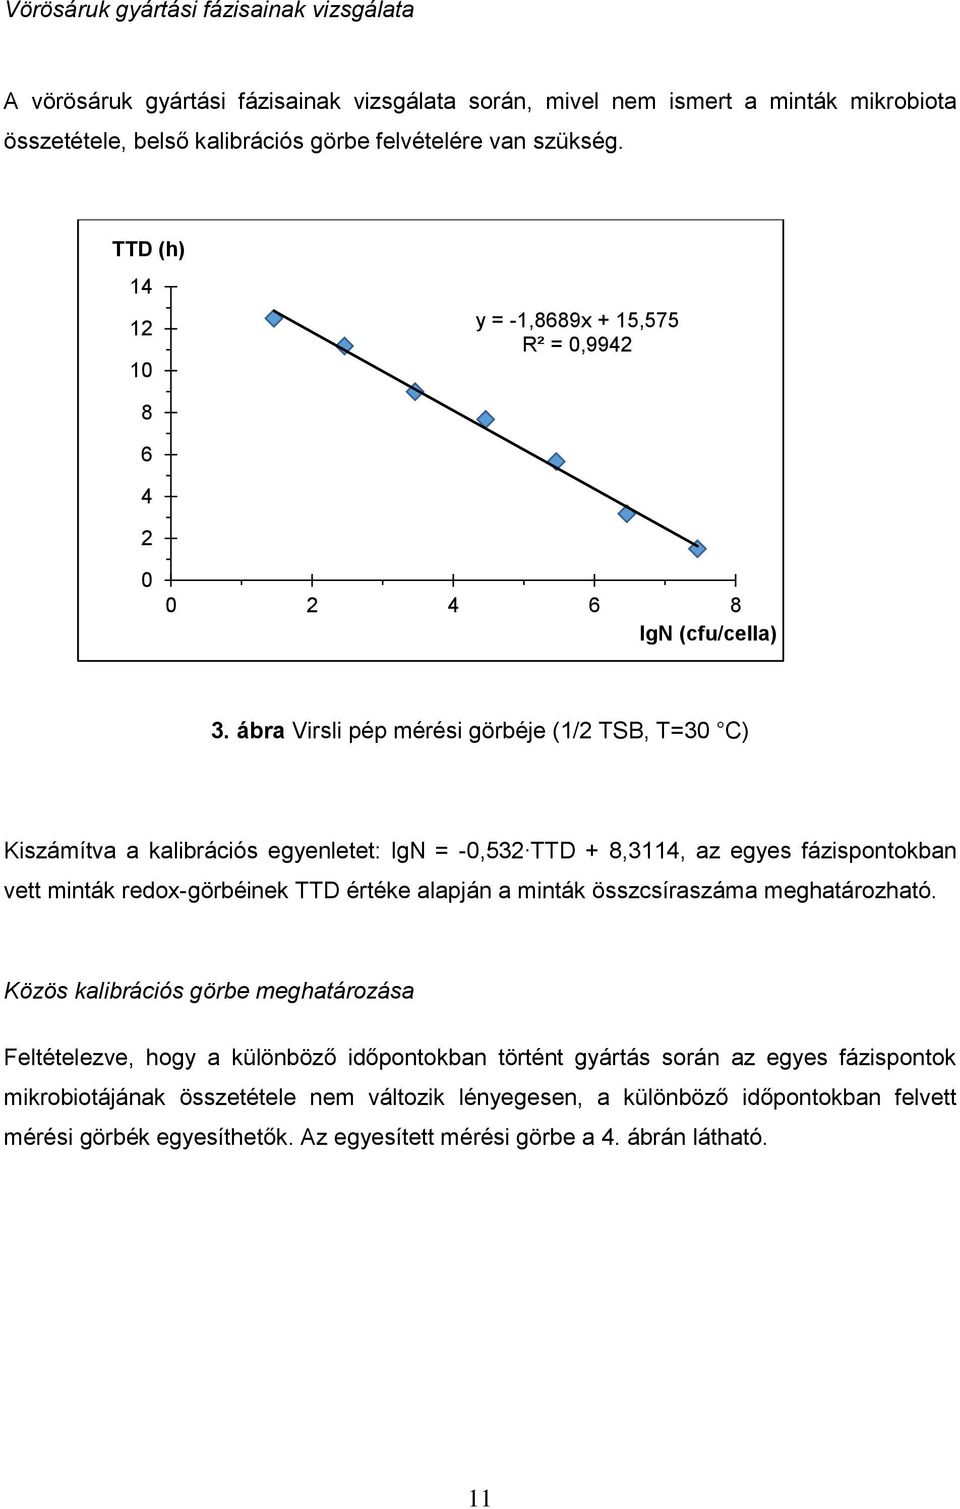 ábra Virsli pép mérési görbéje (1/2 TSB, T=30 C) Kiszámítva a kalibrációs egyenletet: lgn = -0,532 TTD + 8,3114, az egyes fázispontokban vett minták redox-görbéinek TTD értéke alapján a minták